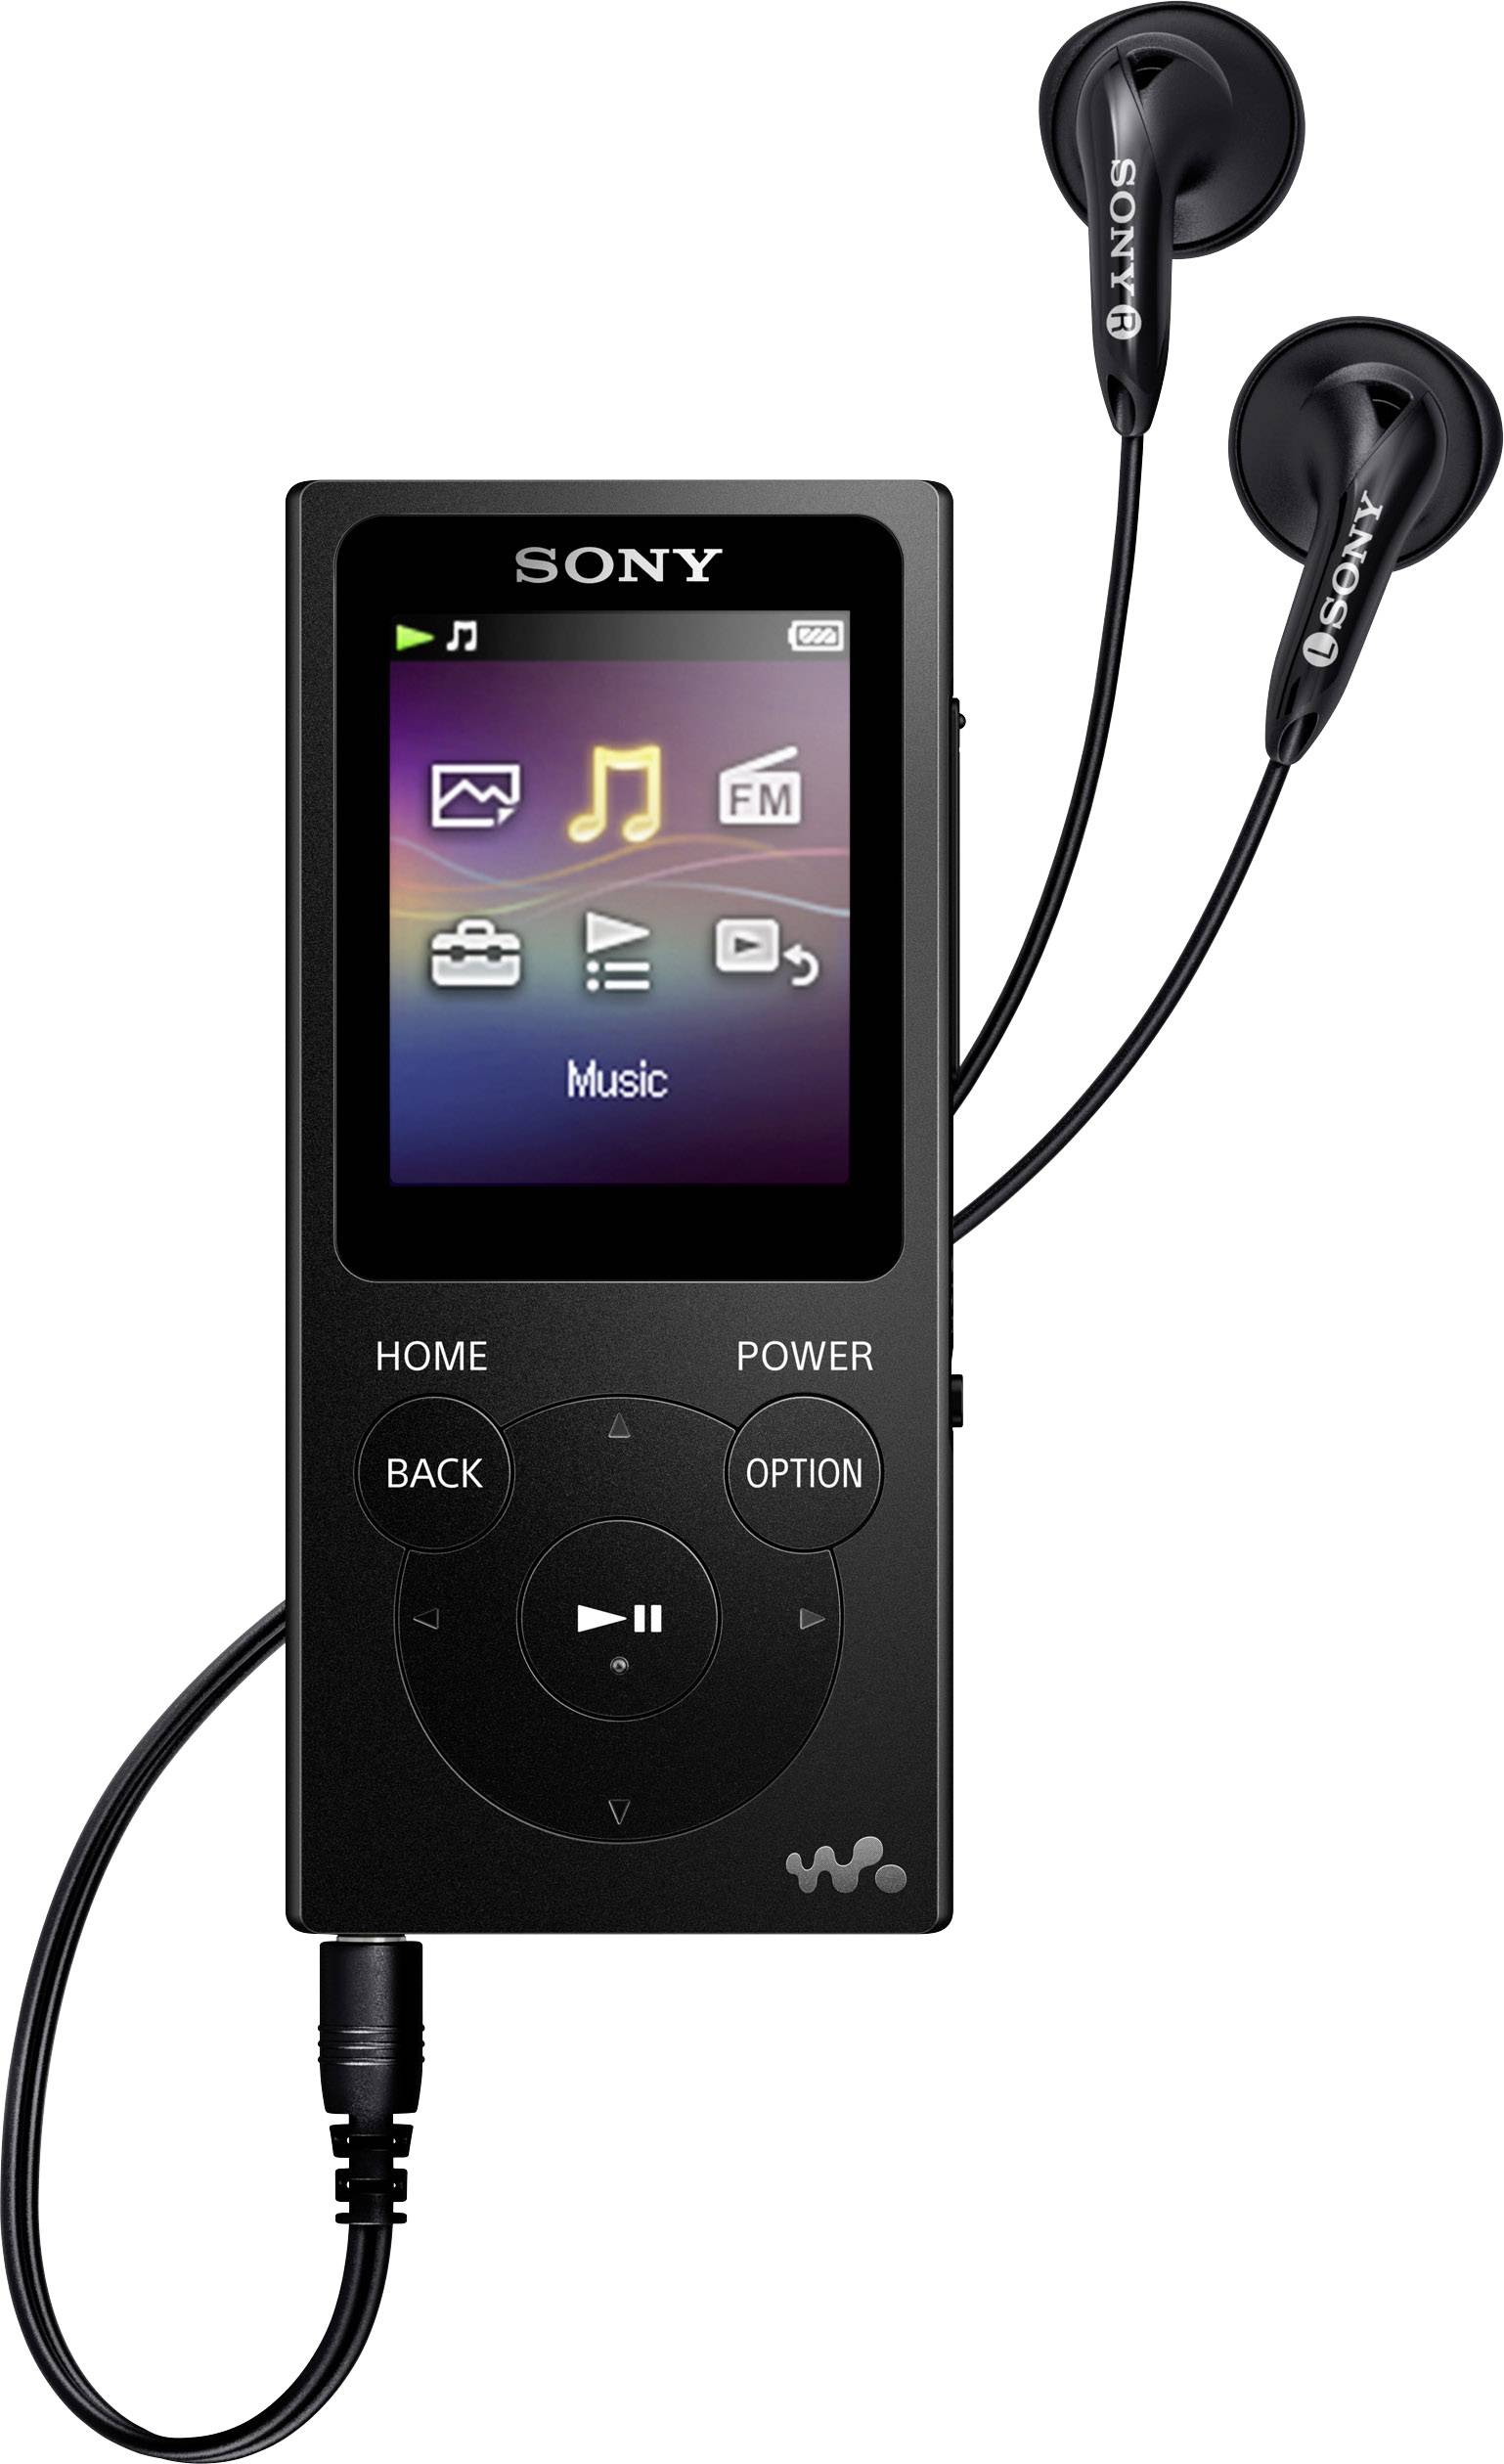 Sony Walkman Nw-e435 F/Nw-e436 F lecteur MP3/MP4 Câble USB/Chargeur de batterie